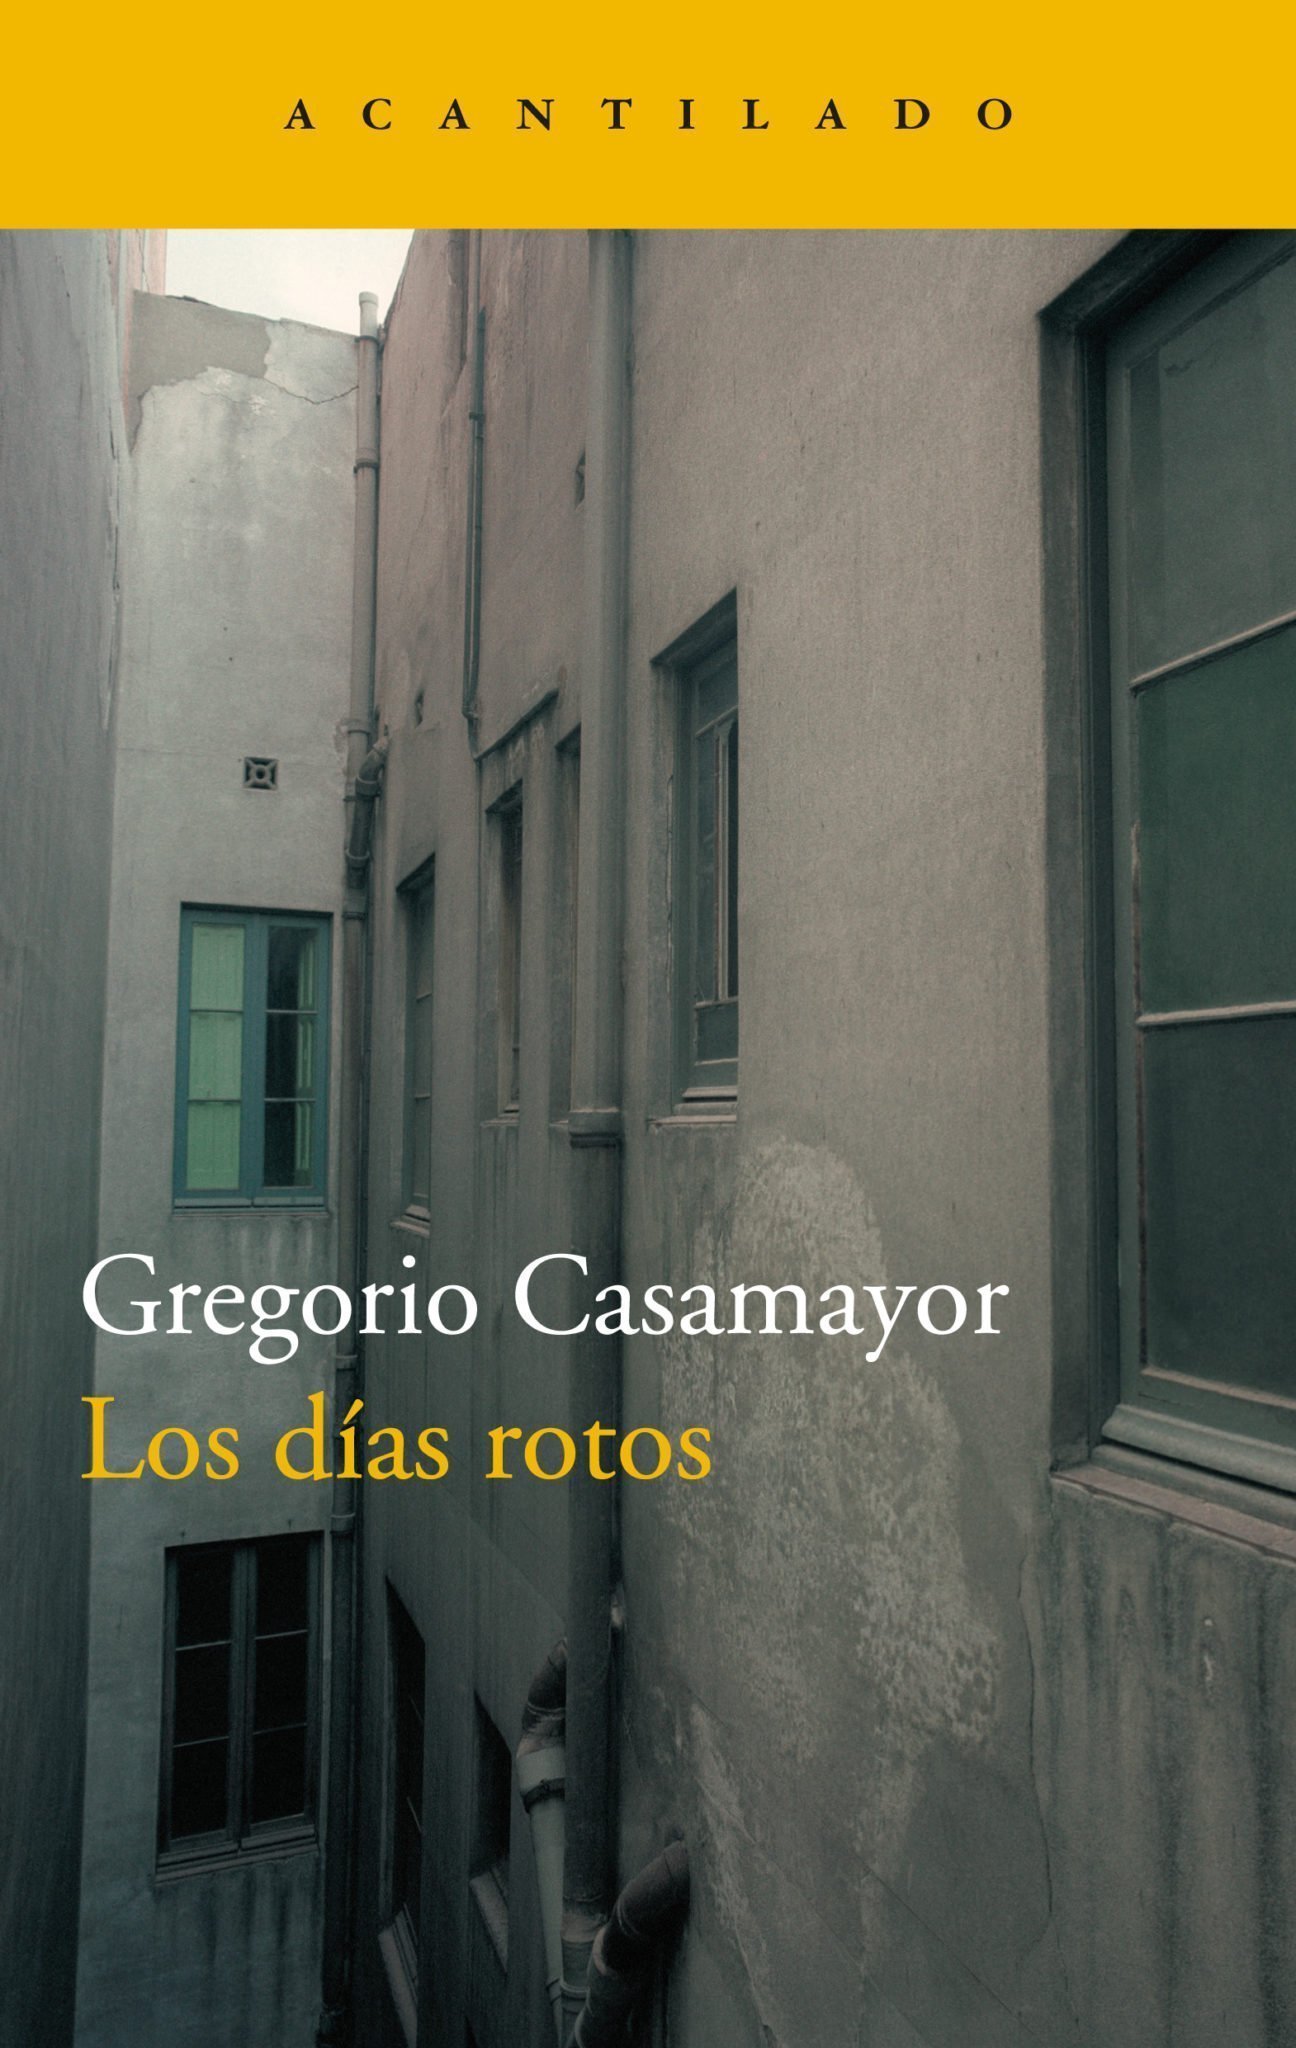 Zenda recomienda: Los días rotos, de Gregorio Casamayor